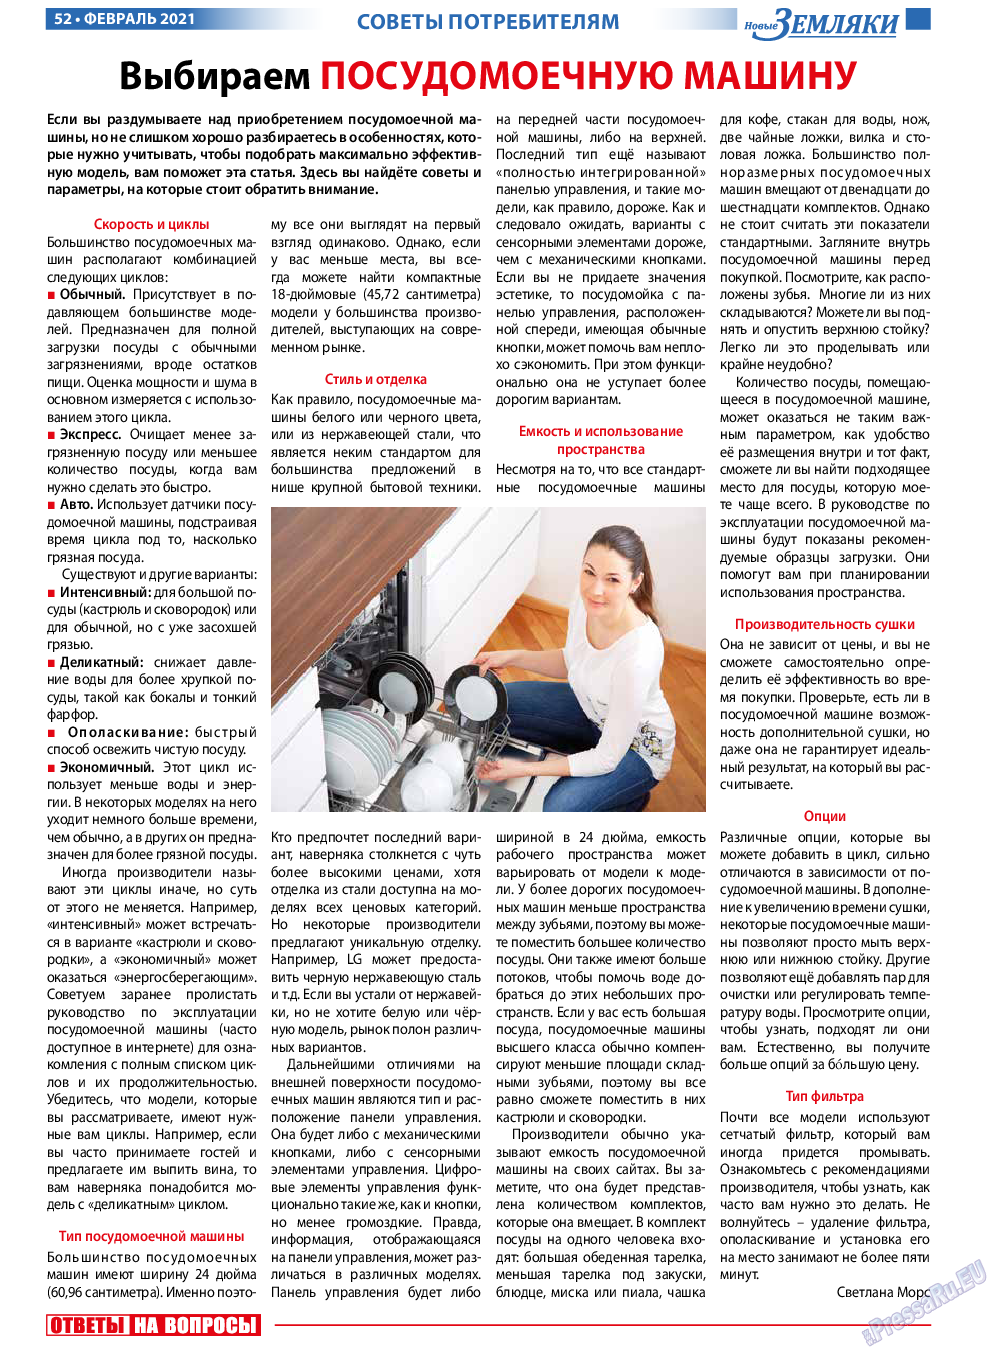 Новые Земляки, газета. 2021 №2 стр.52